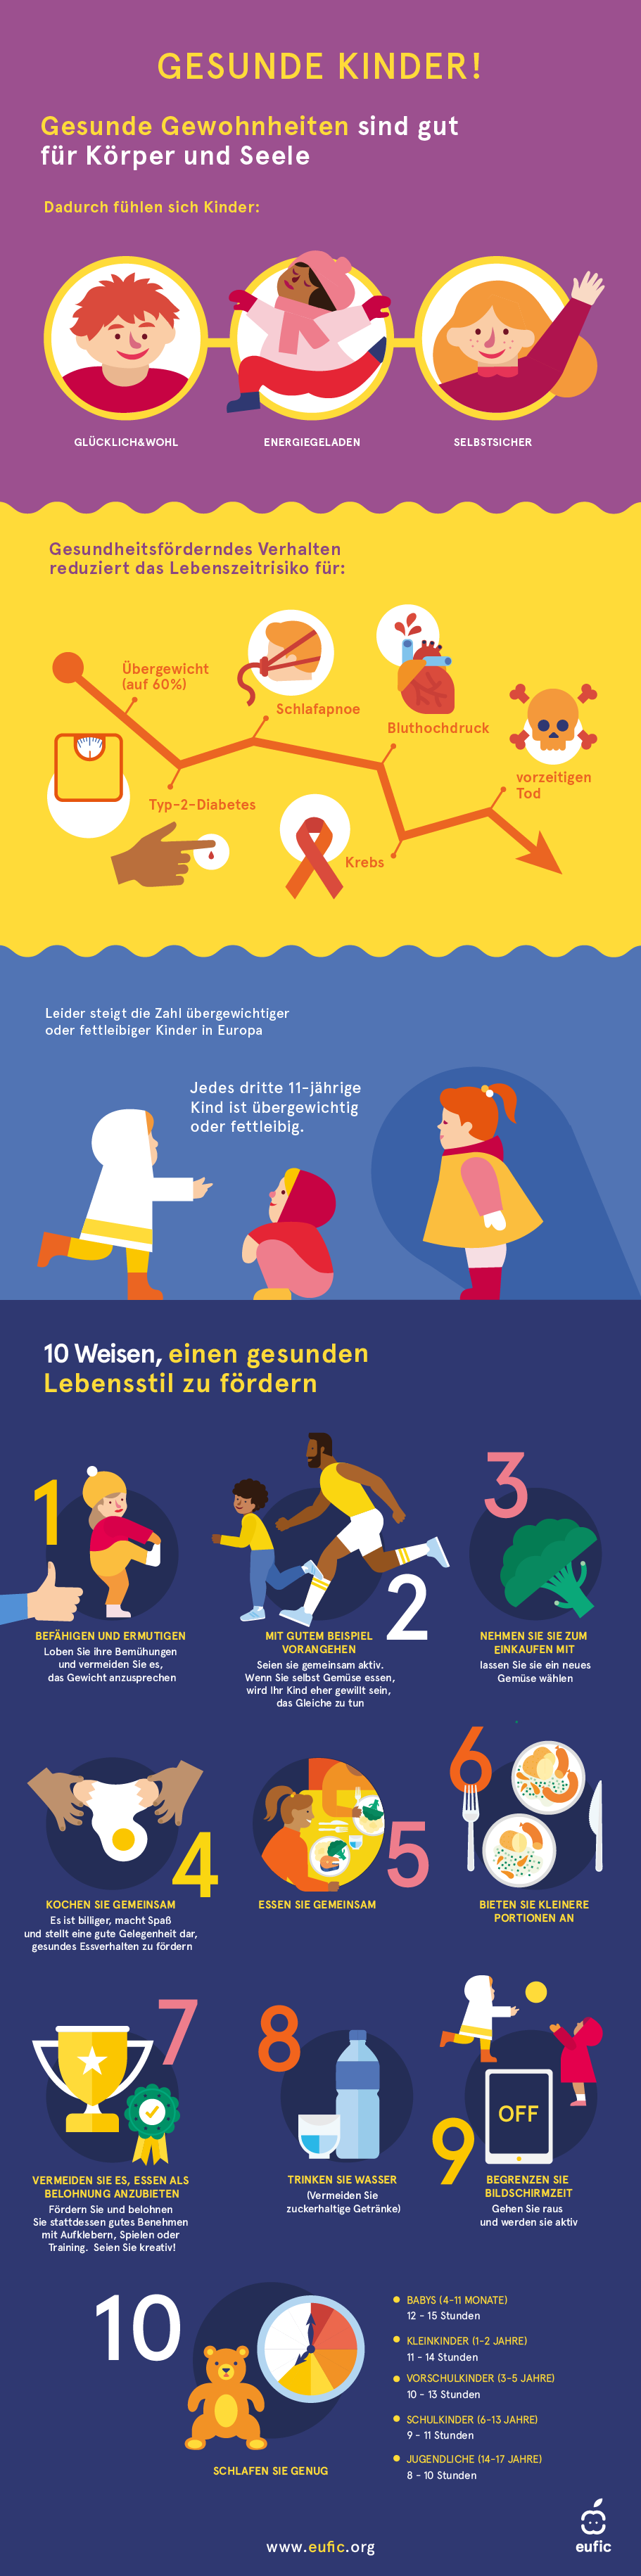 Infographik über Kindheitsfettleibigkeit mit 10 wisschenschaflichen Tipps Kinder für ein gesünderes Leben zu motivieren